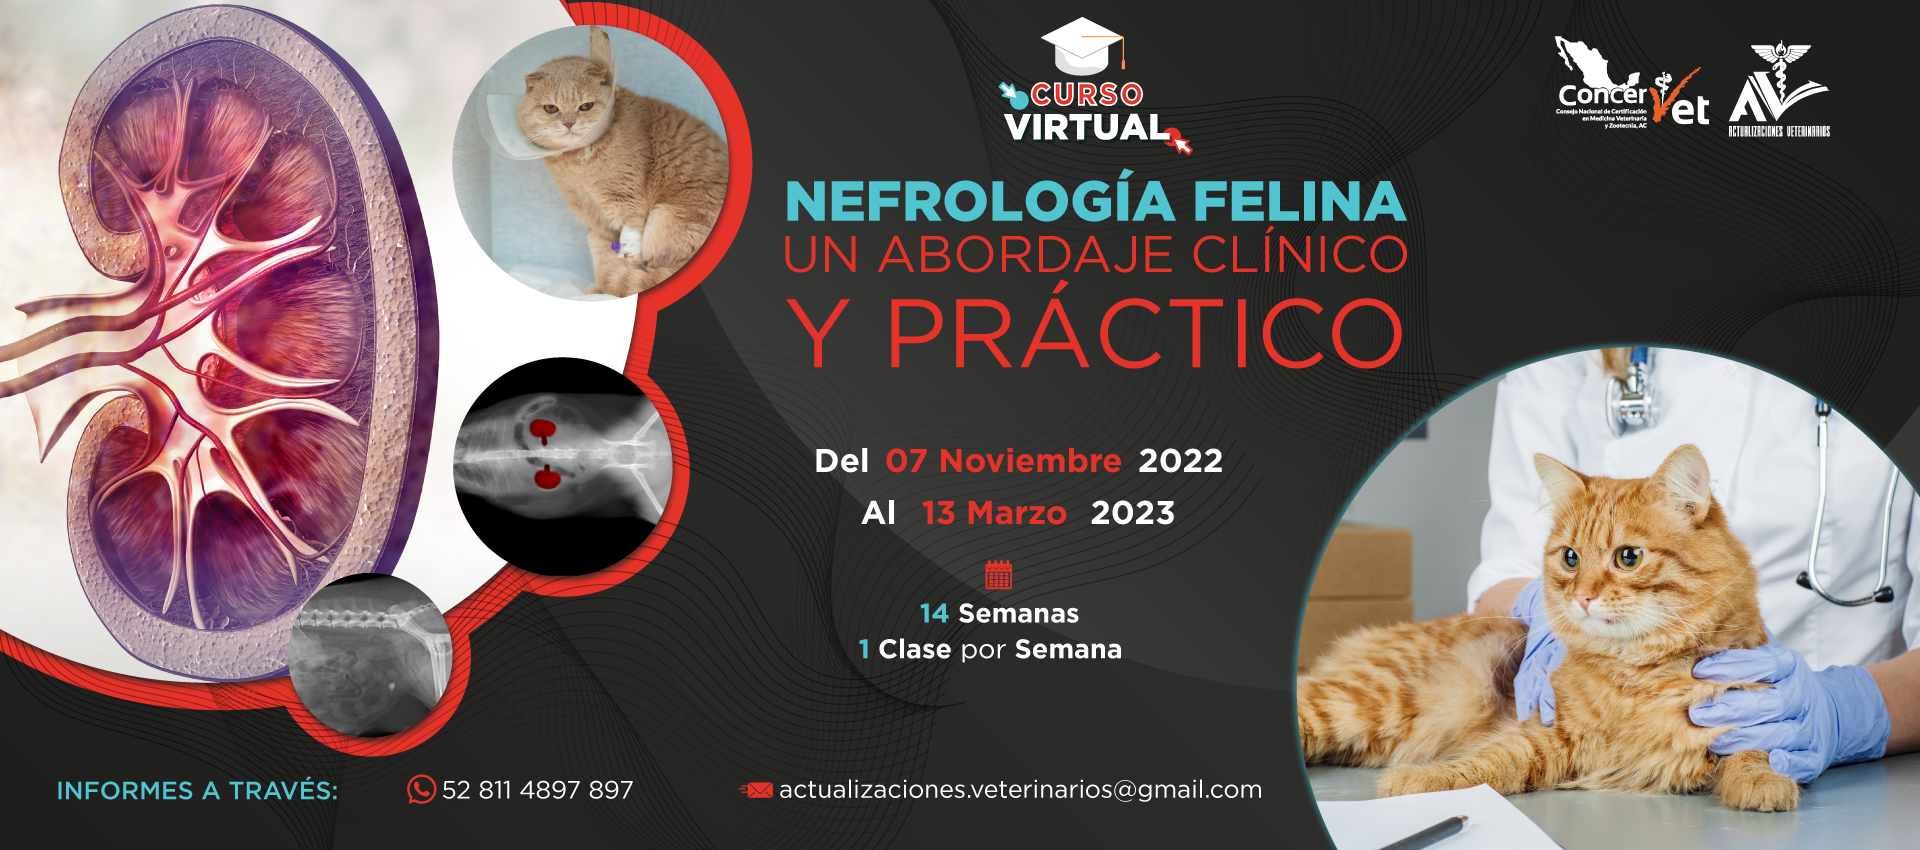 Nefrología Felina un abordaje clínico y práctico